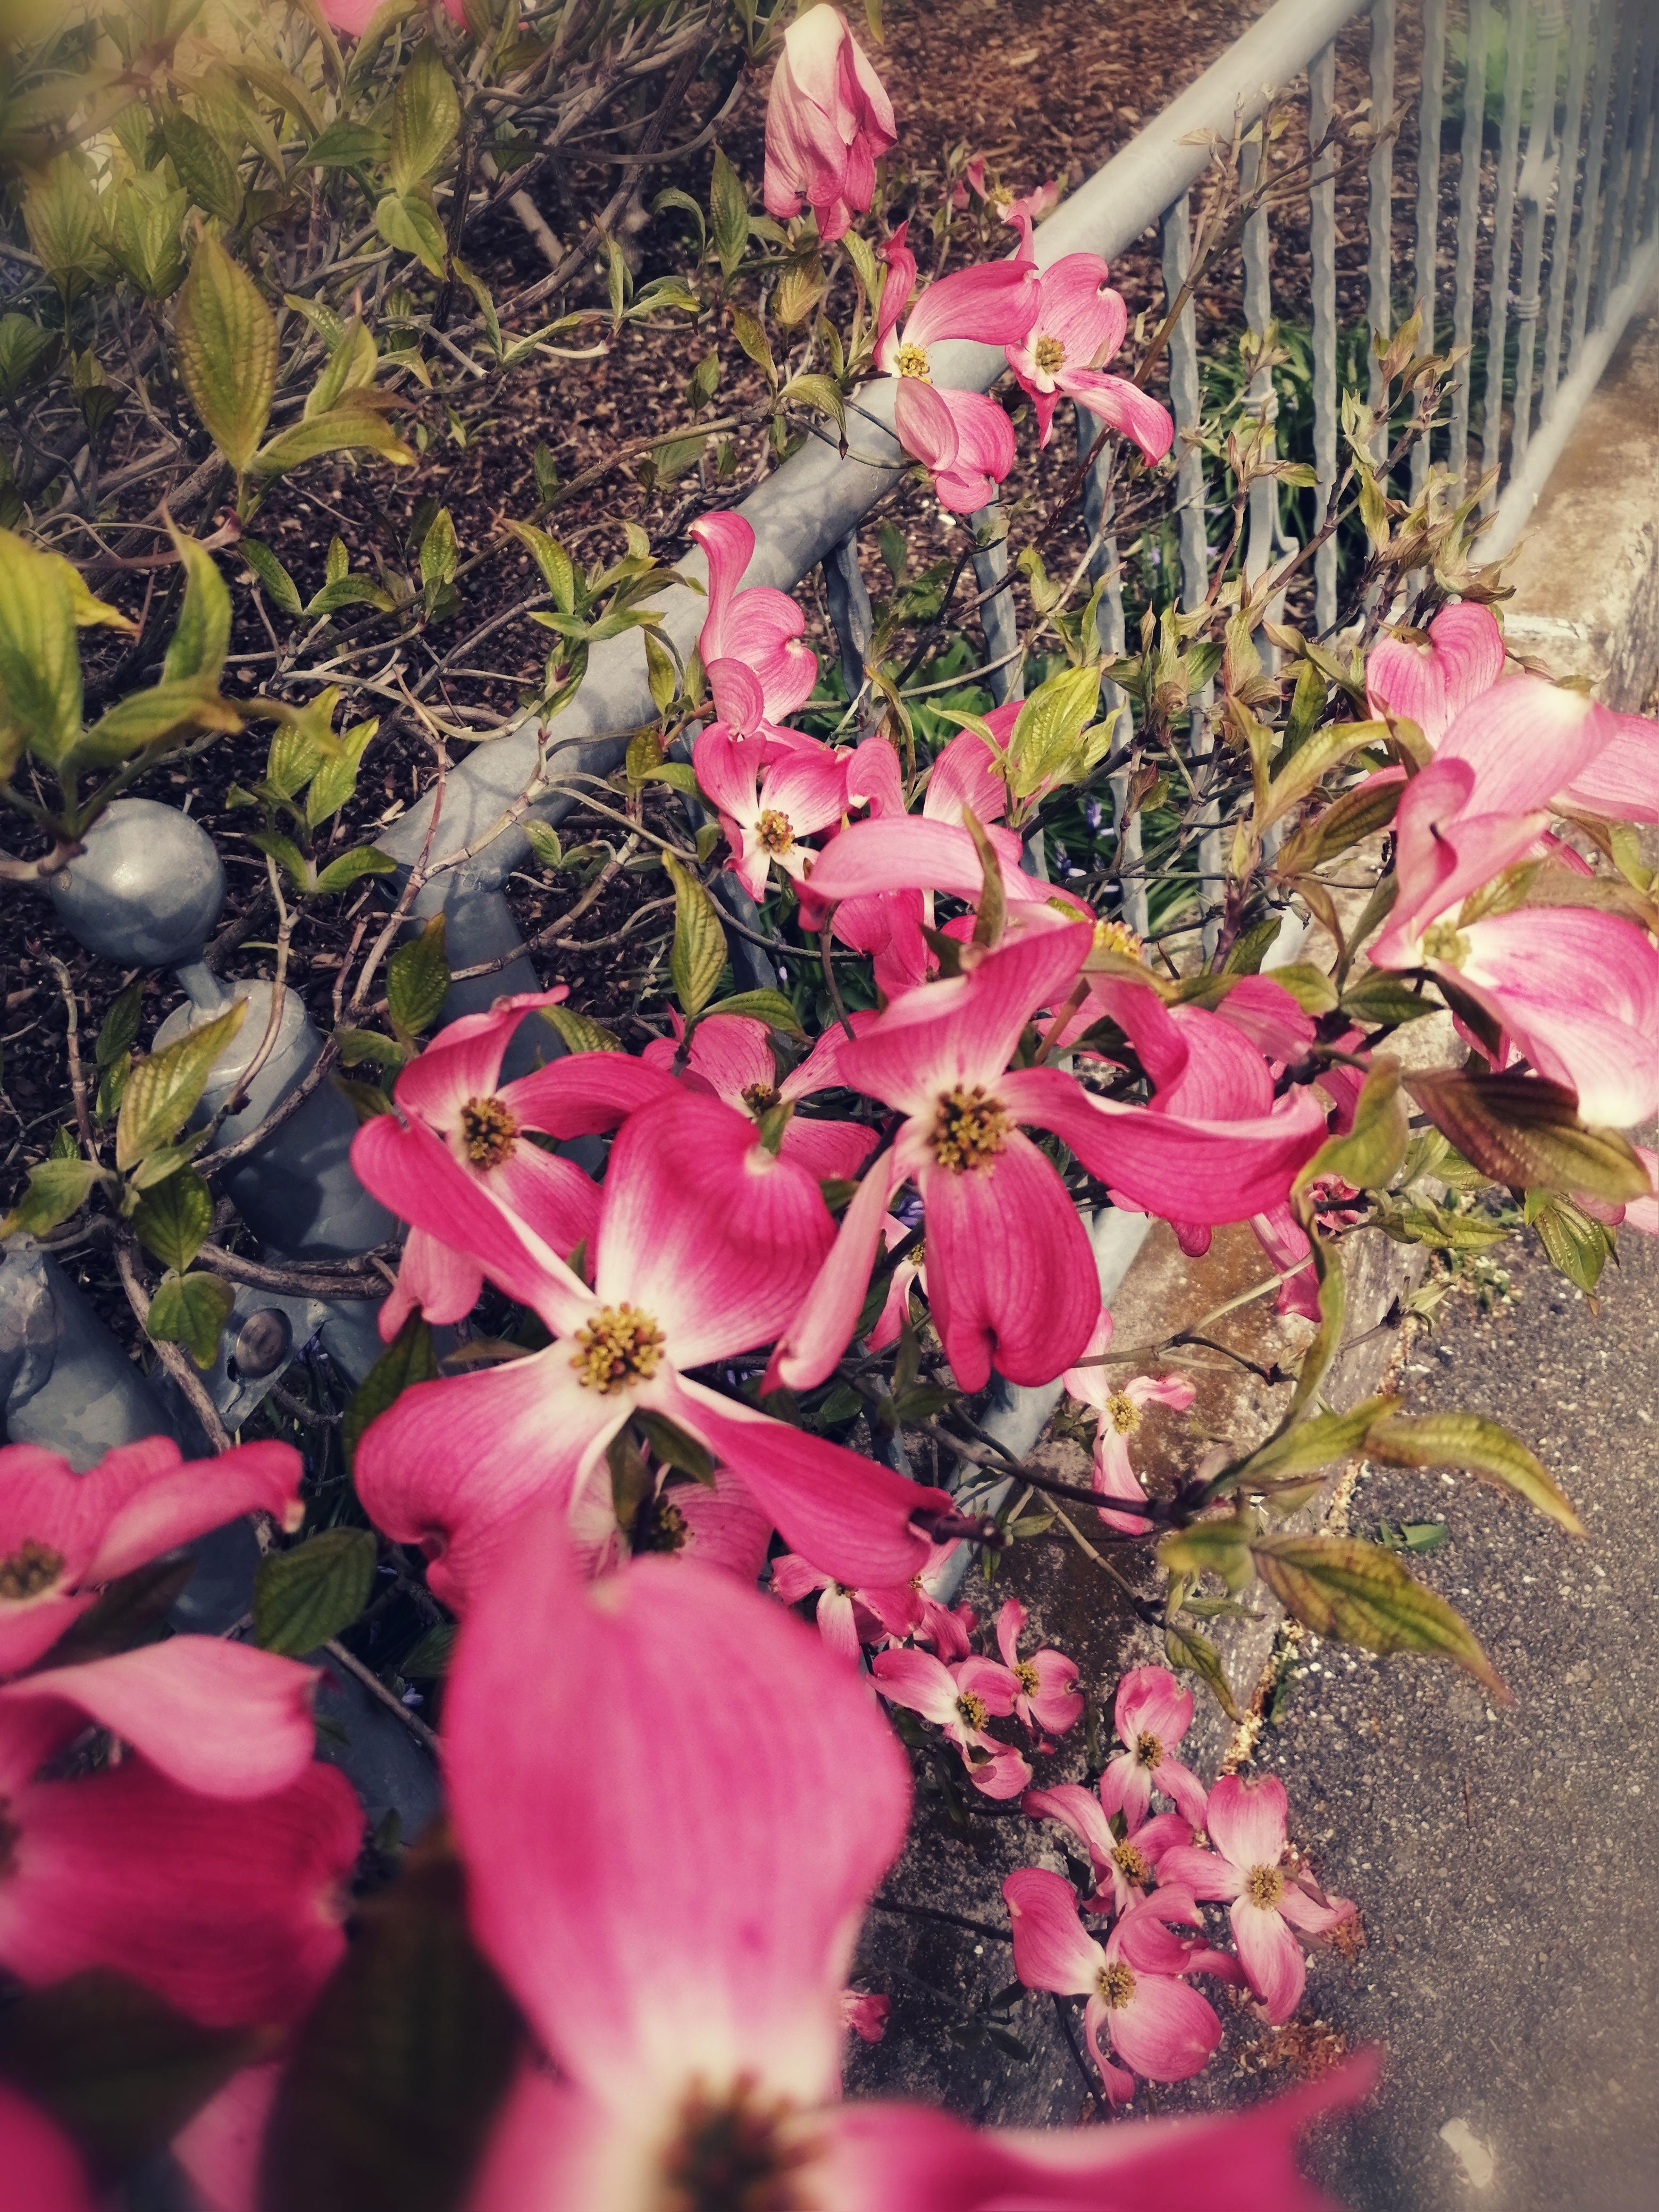 Blumen sind was wunderbares.
#blumen #natur #frühling